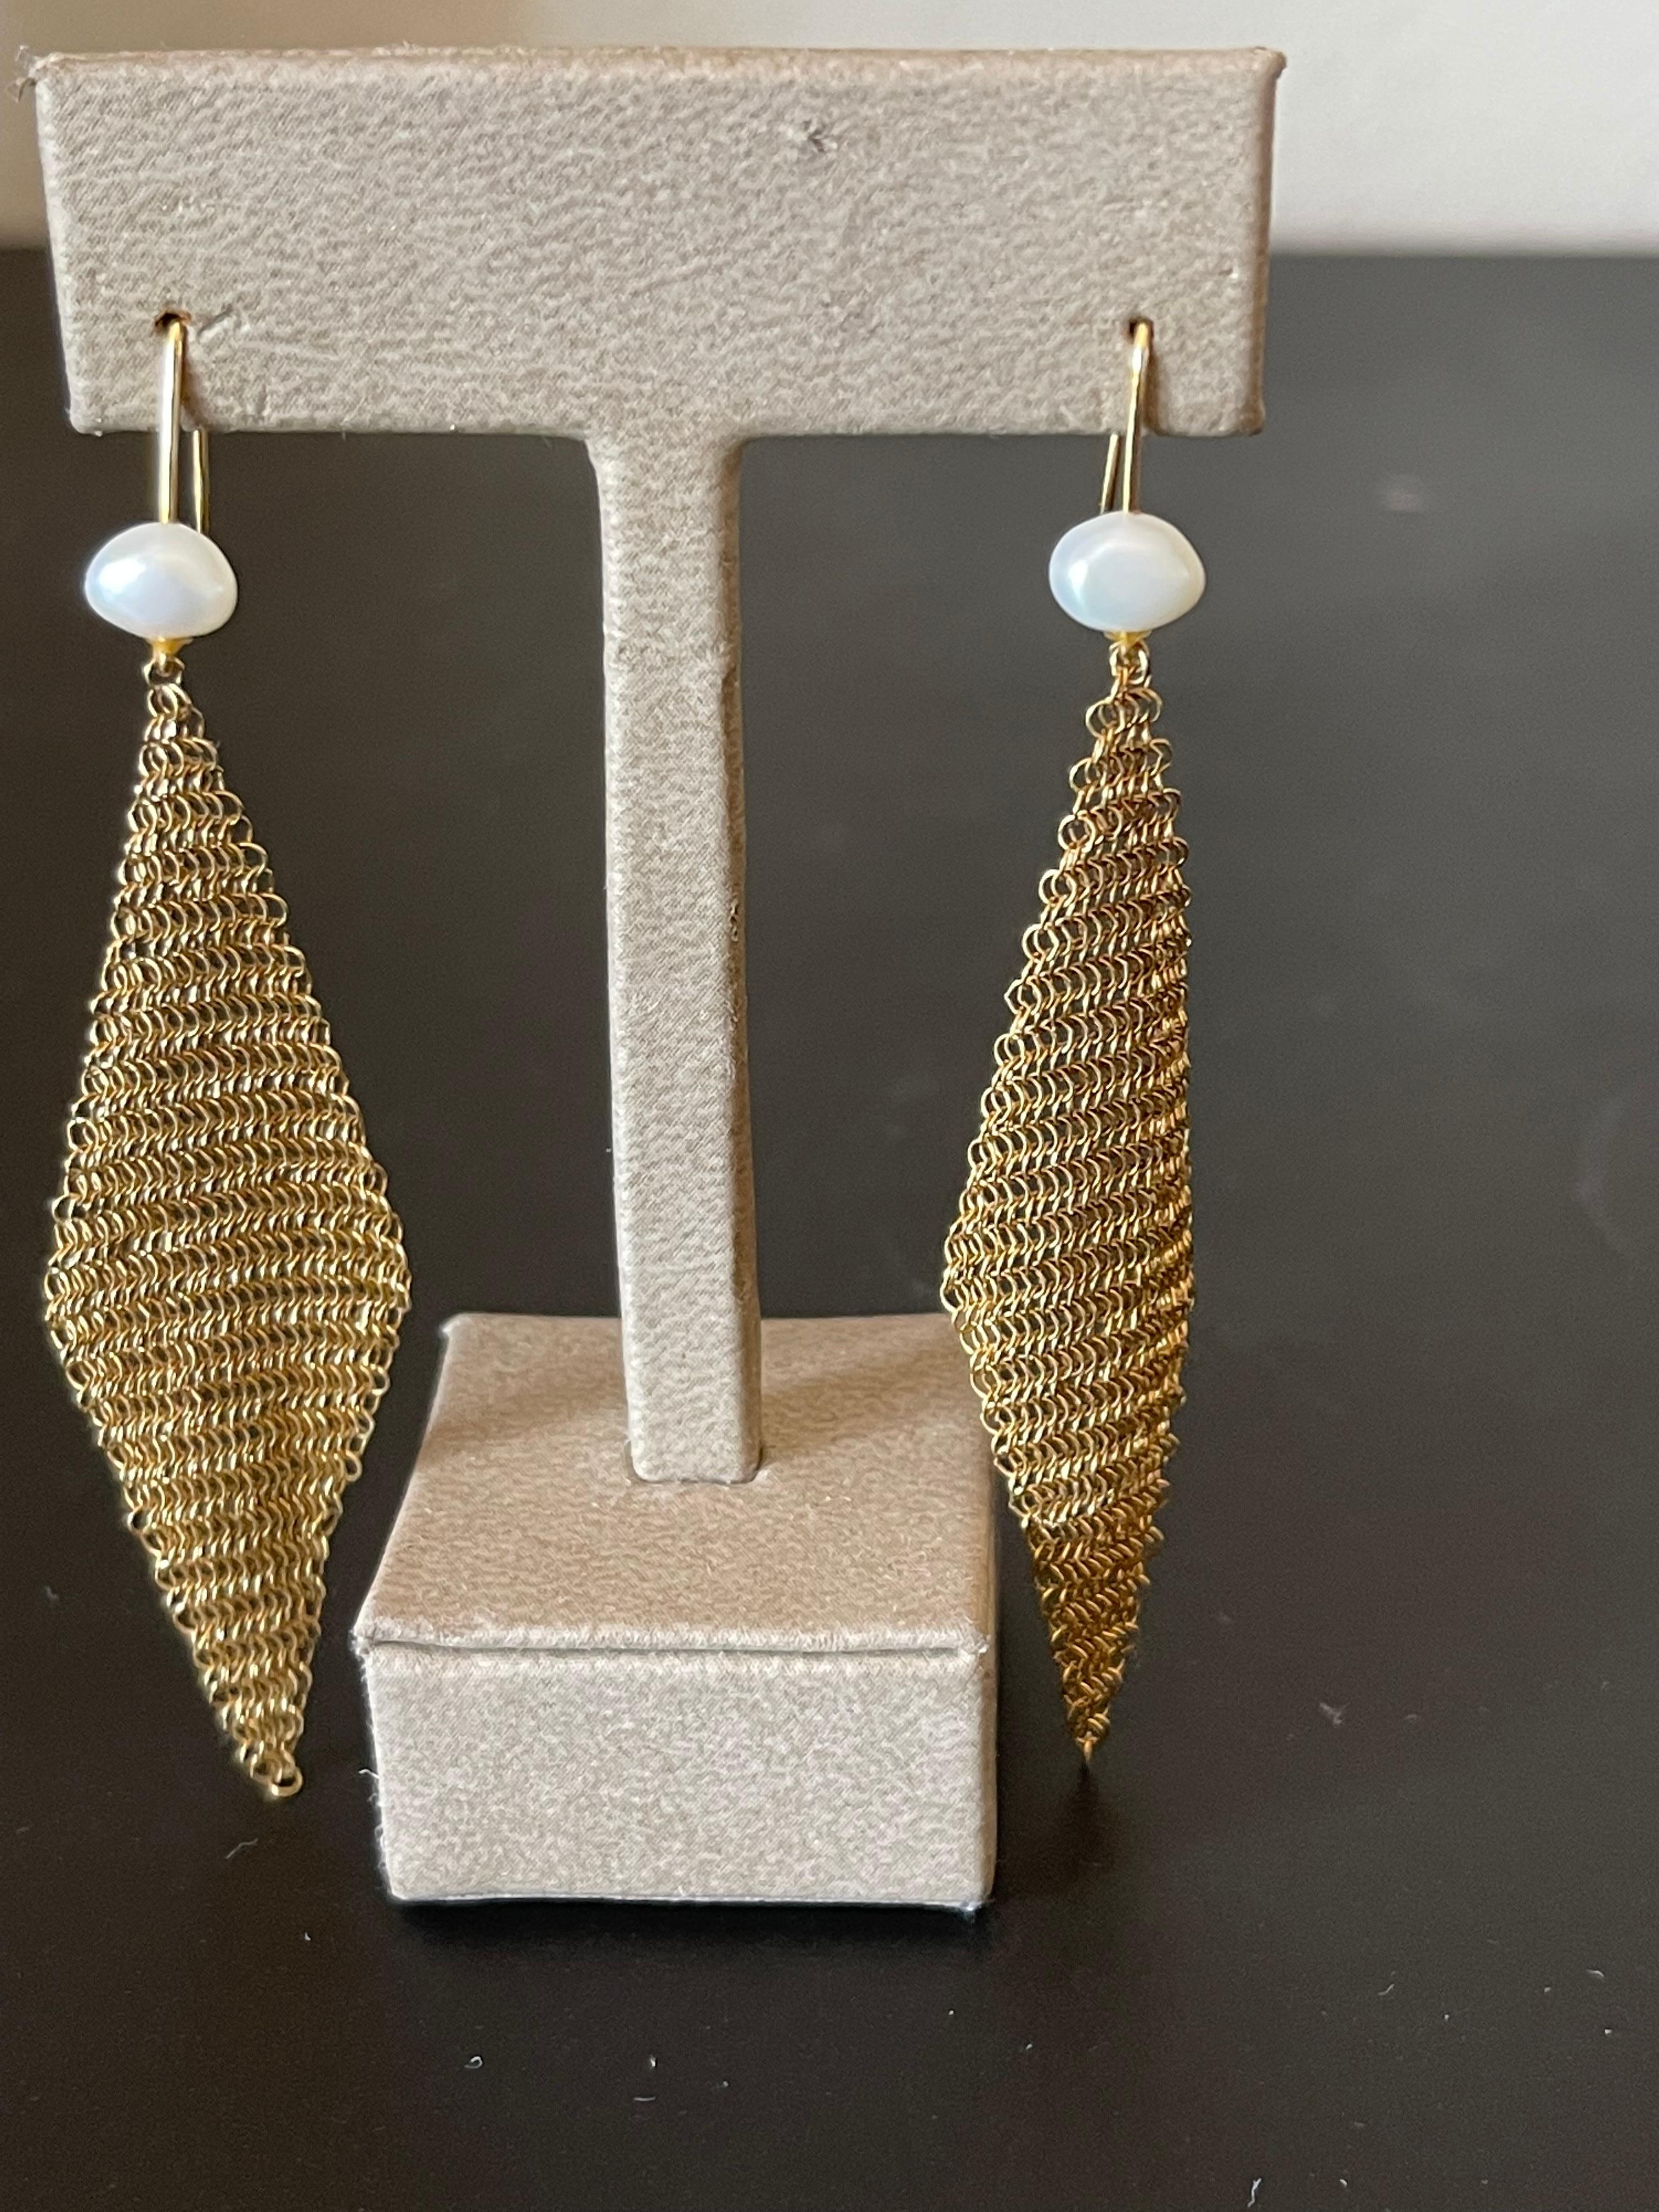 18k Gelbgold Perlengeflecht Halskette  und passende Ohrringe von Elsa Peretti für Tiffany & Co.  Mit 55Perlen von 5mm bis 4,5mm. Wird in der originalen Tifanny & co Box geliefert.
Länge der Halskette: 39.5 cm
Breite der Halskette: 4cm
Länge: des